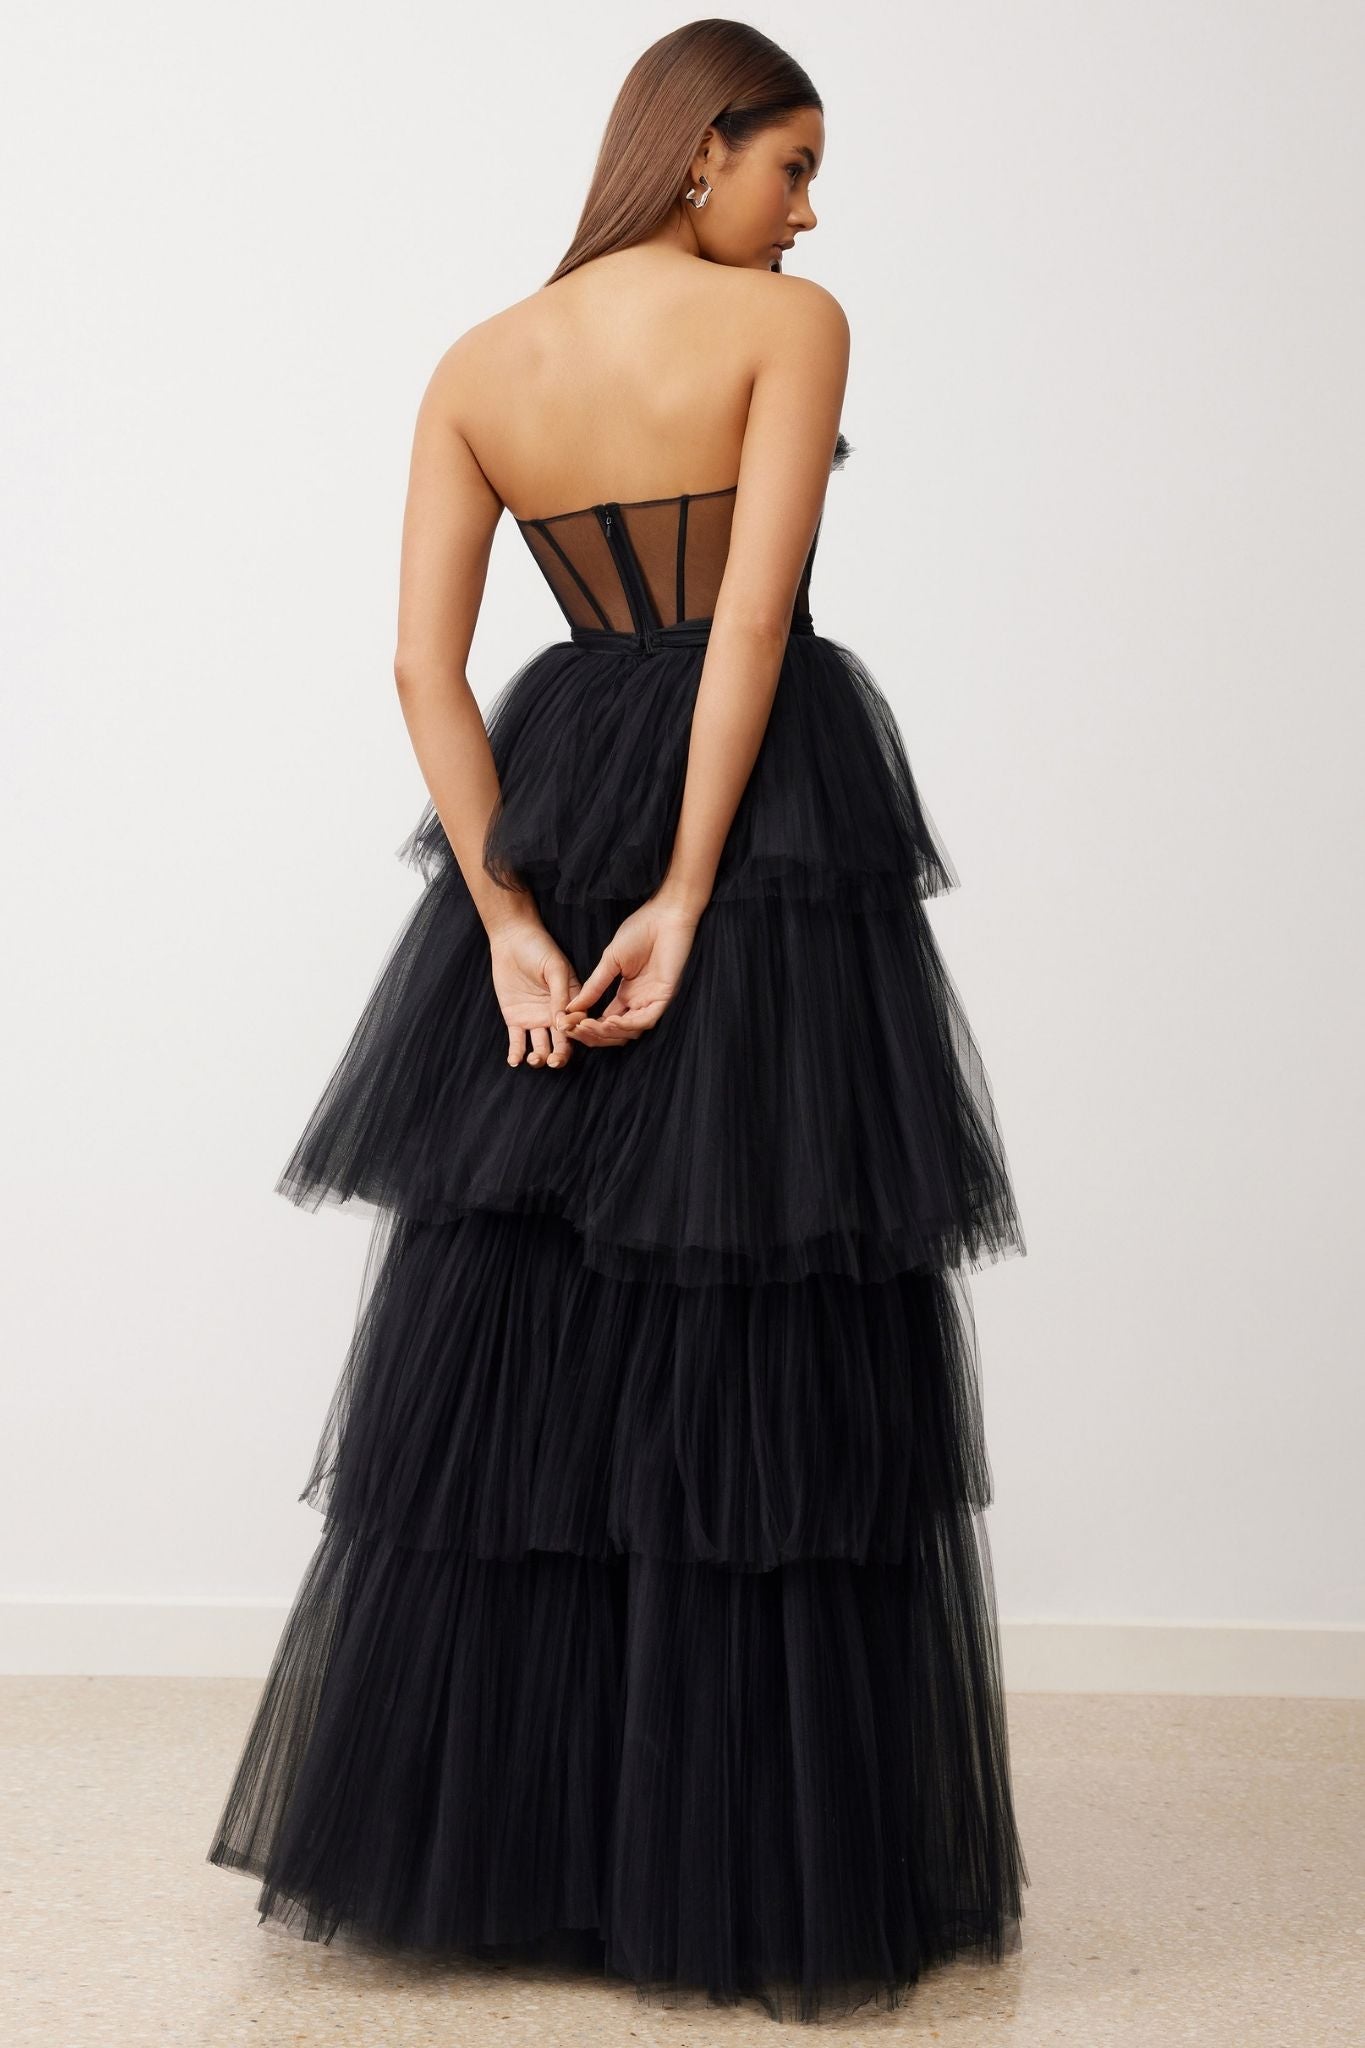 La Mer Dress in Black by Lexi - RENTAL